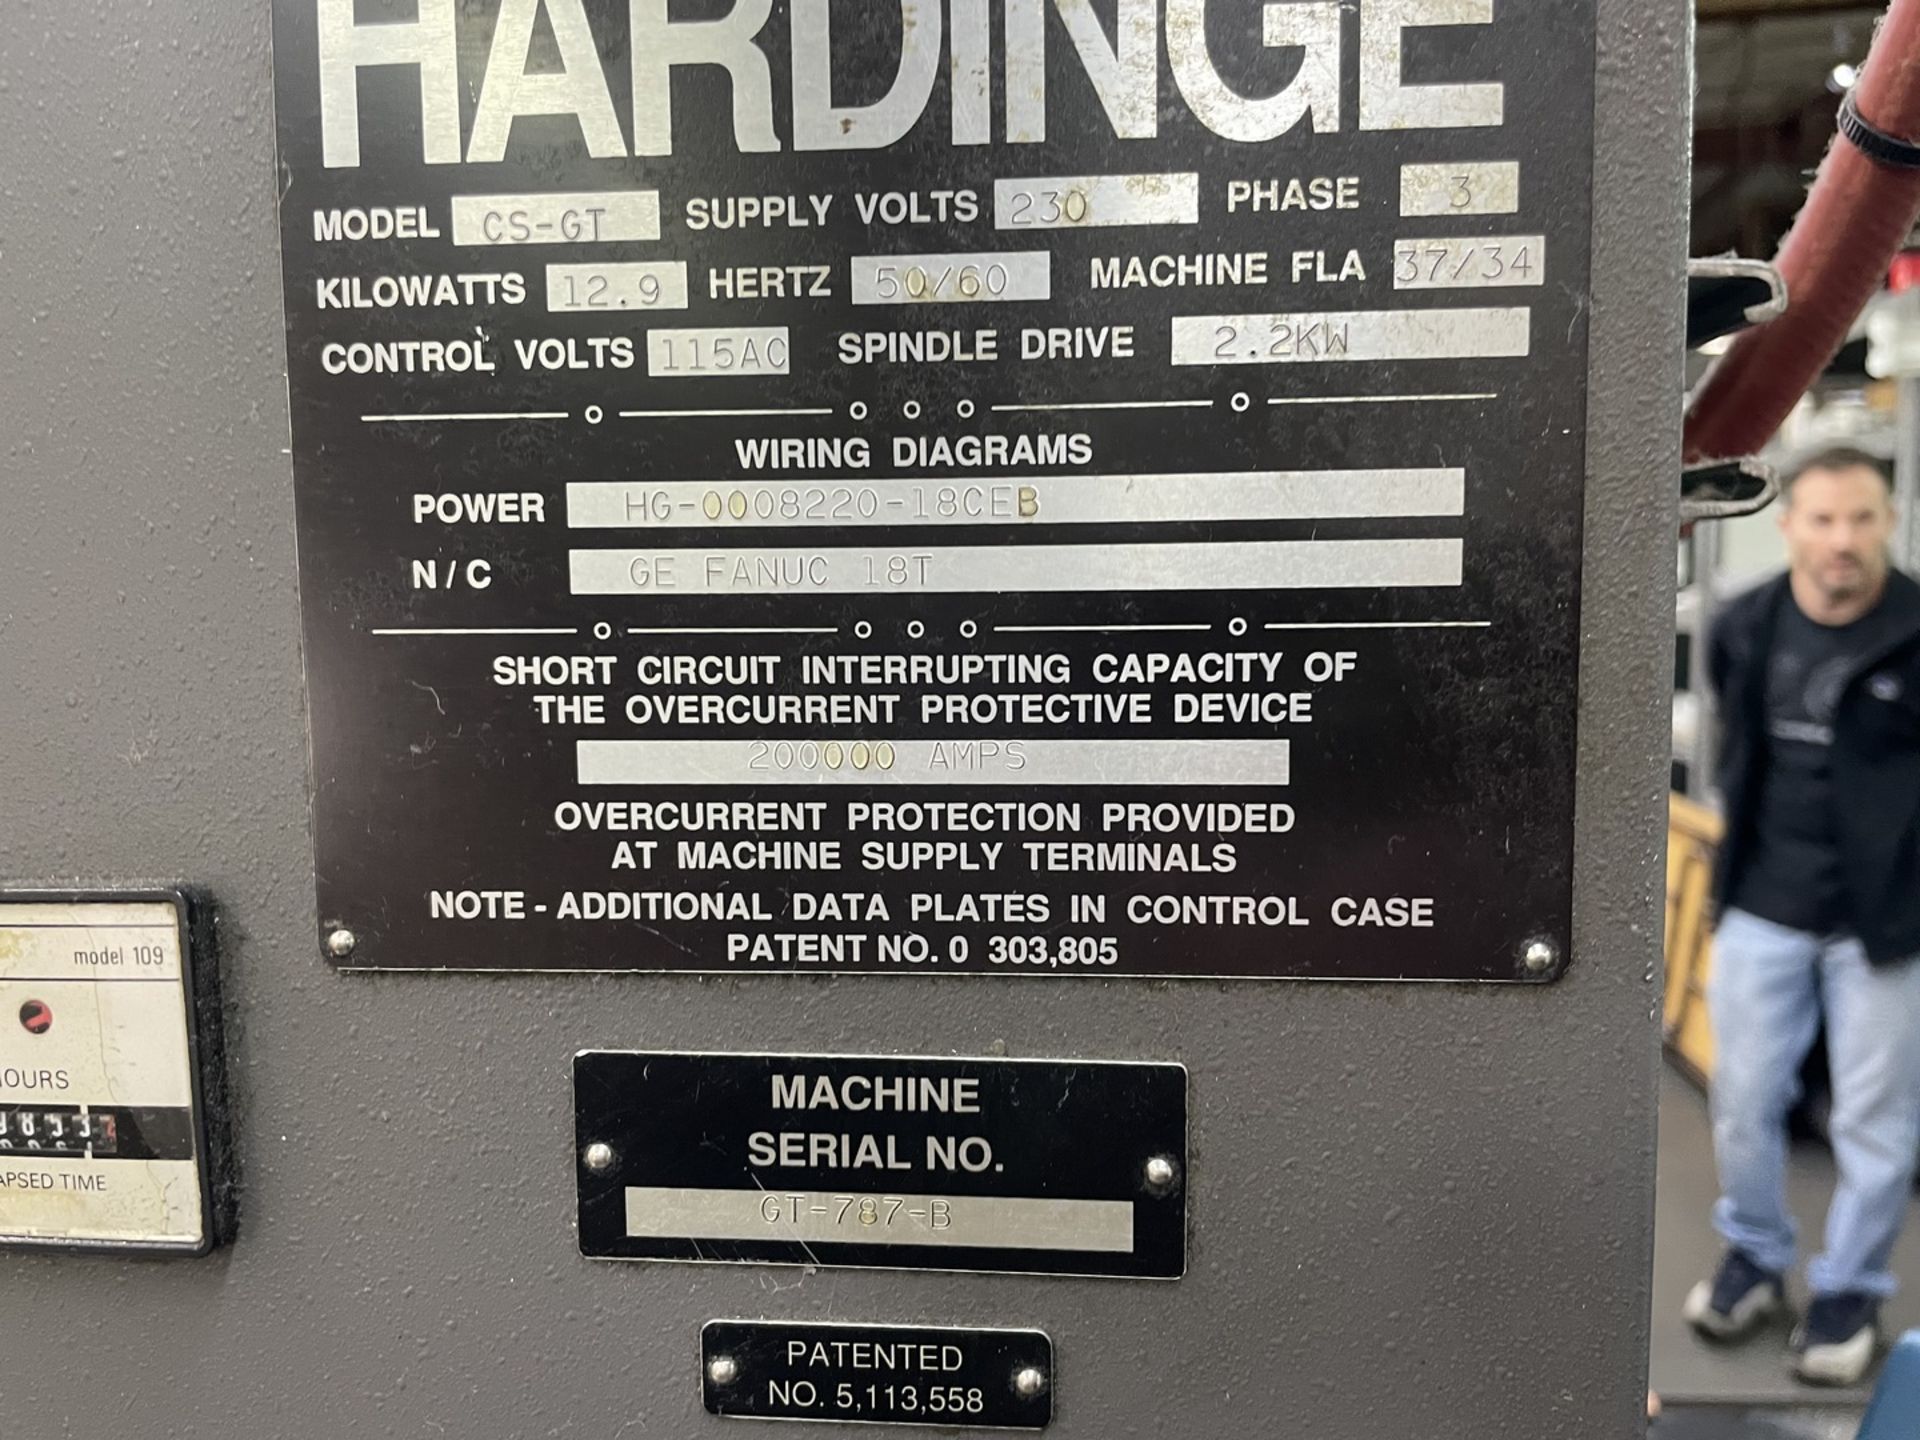 1997 Hardinge GT27-1, CNC Gang Lathe - Image 13 of 13